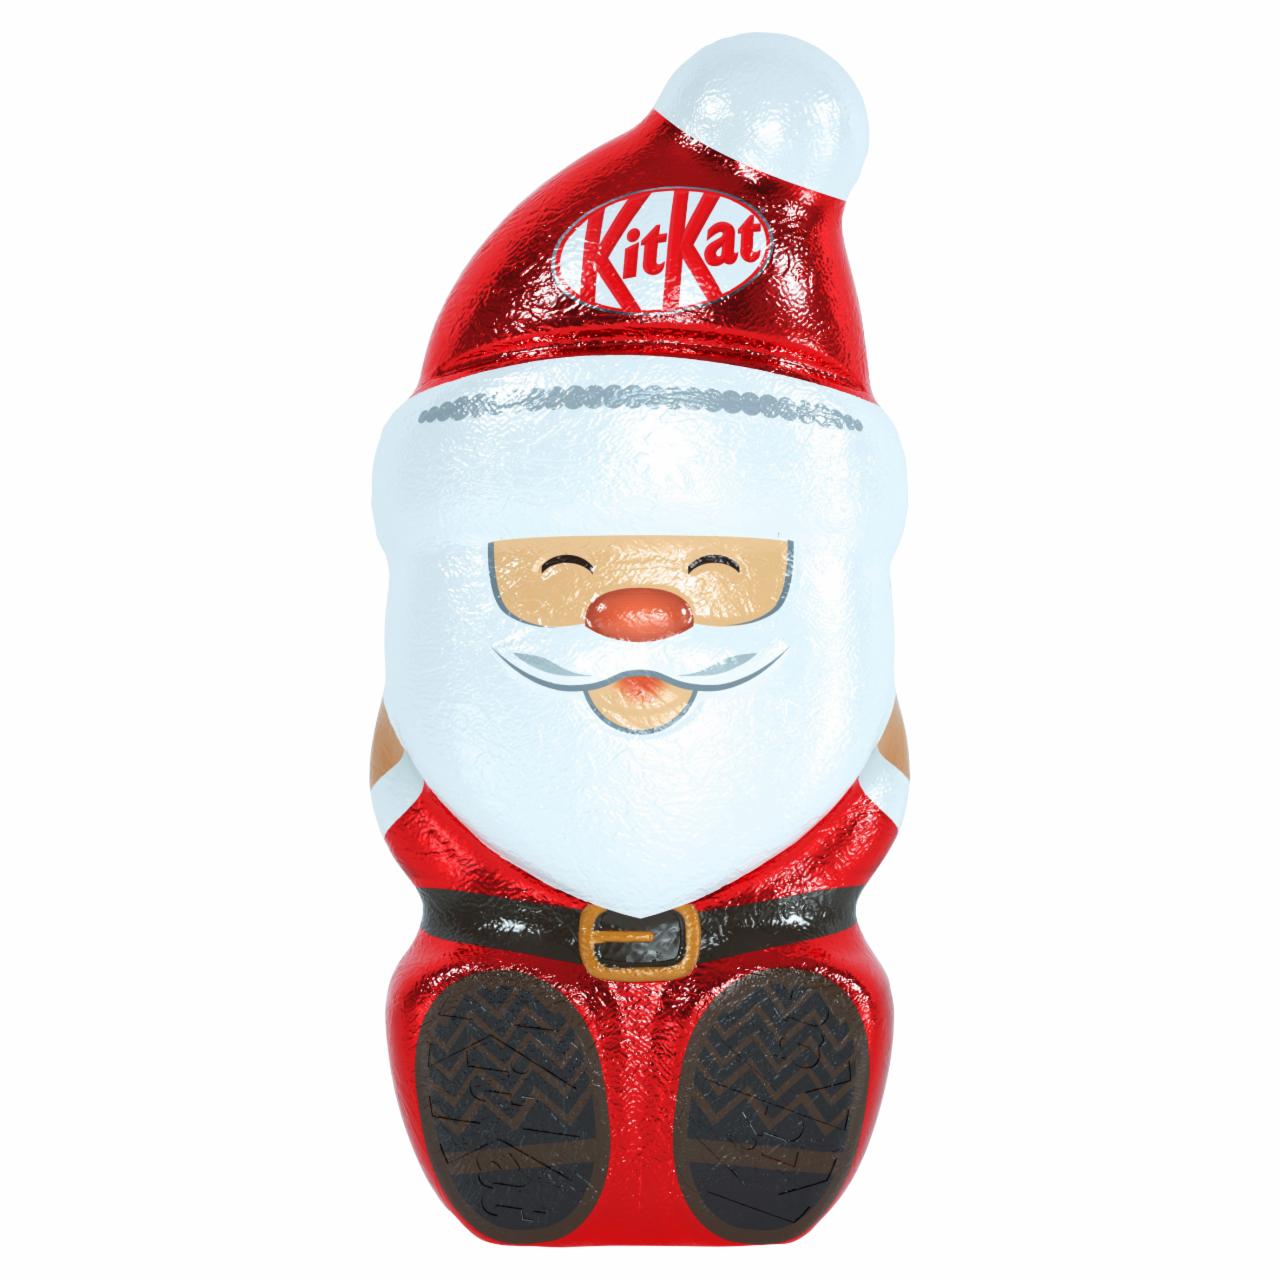 Zdjęcia - KitKat Figura z mlecznej czekolady z chrupkami zbożowymi 85 g